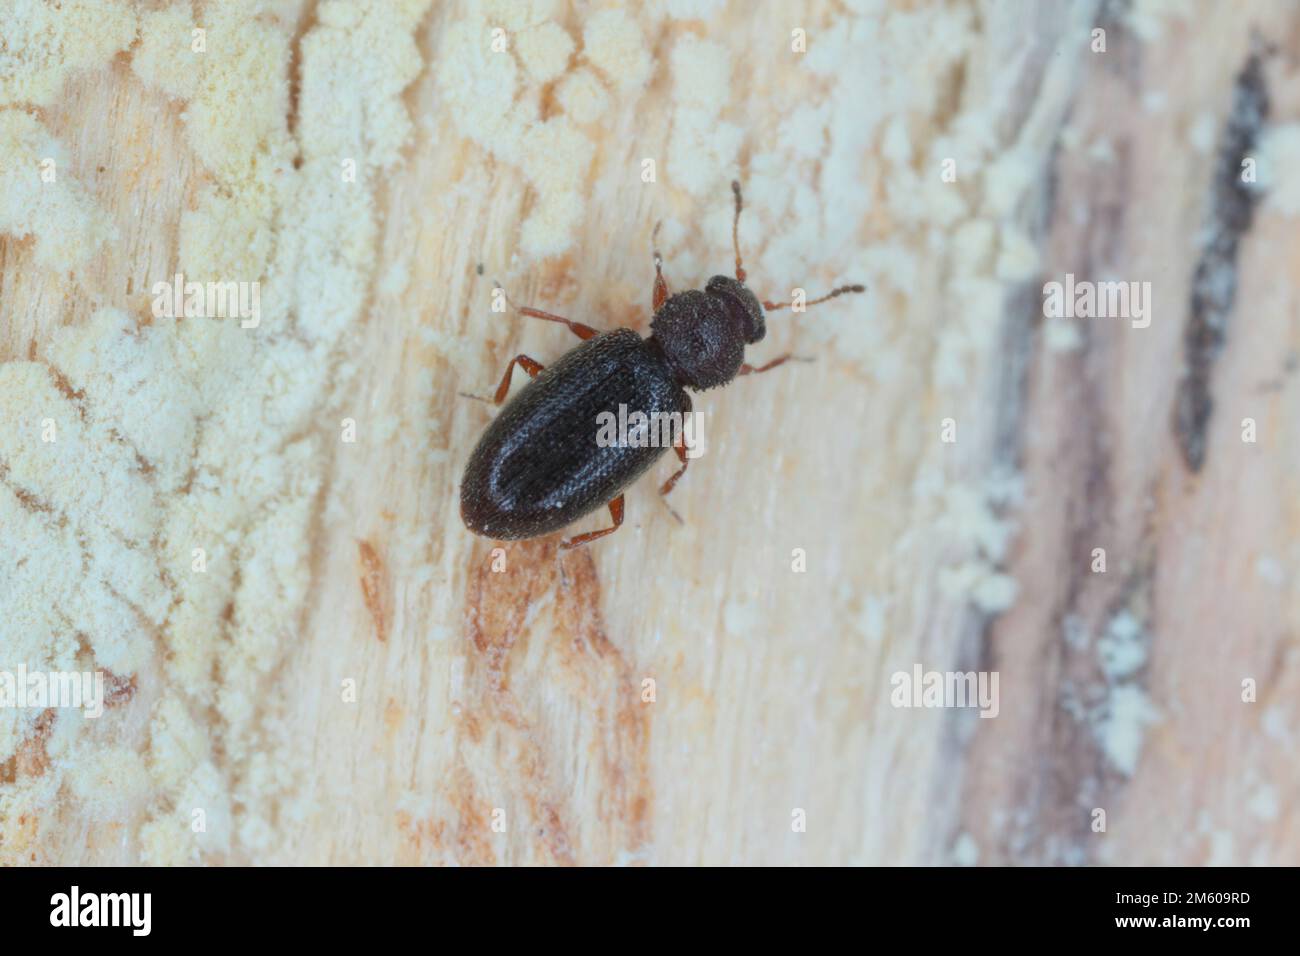 Piccolo scarnolino nero latridiidae, lathridiidae su legno. Ingrandimento elevato. Foto Stock